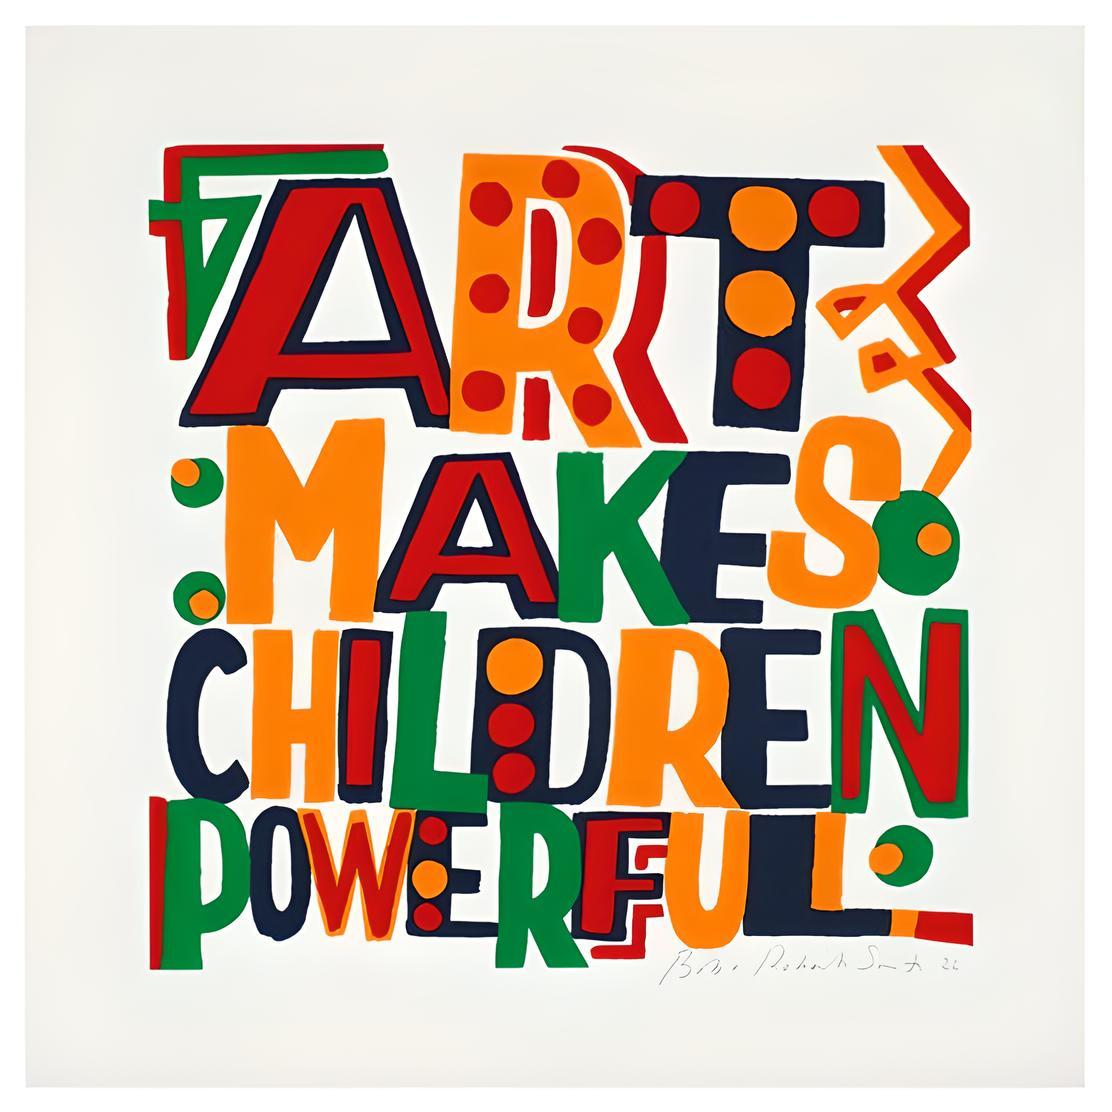 Kunst macht Kinder kraftvoll